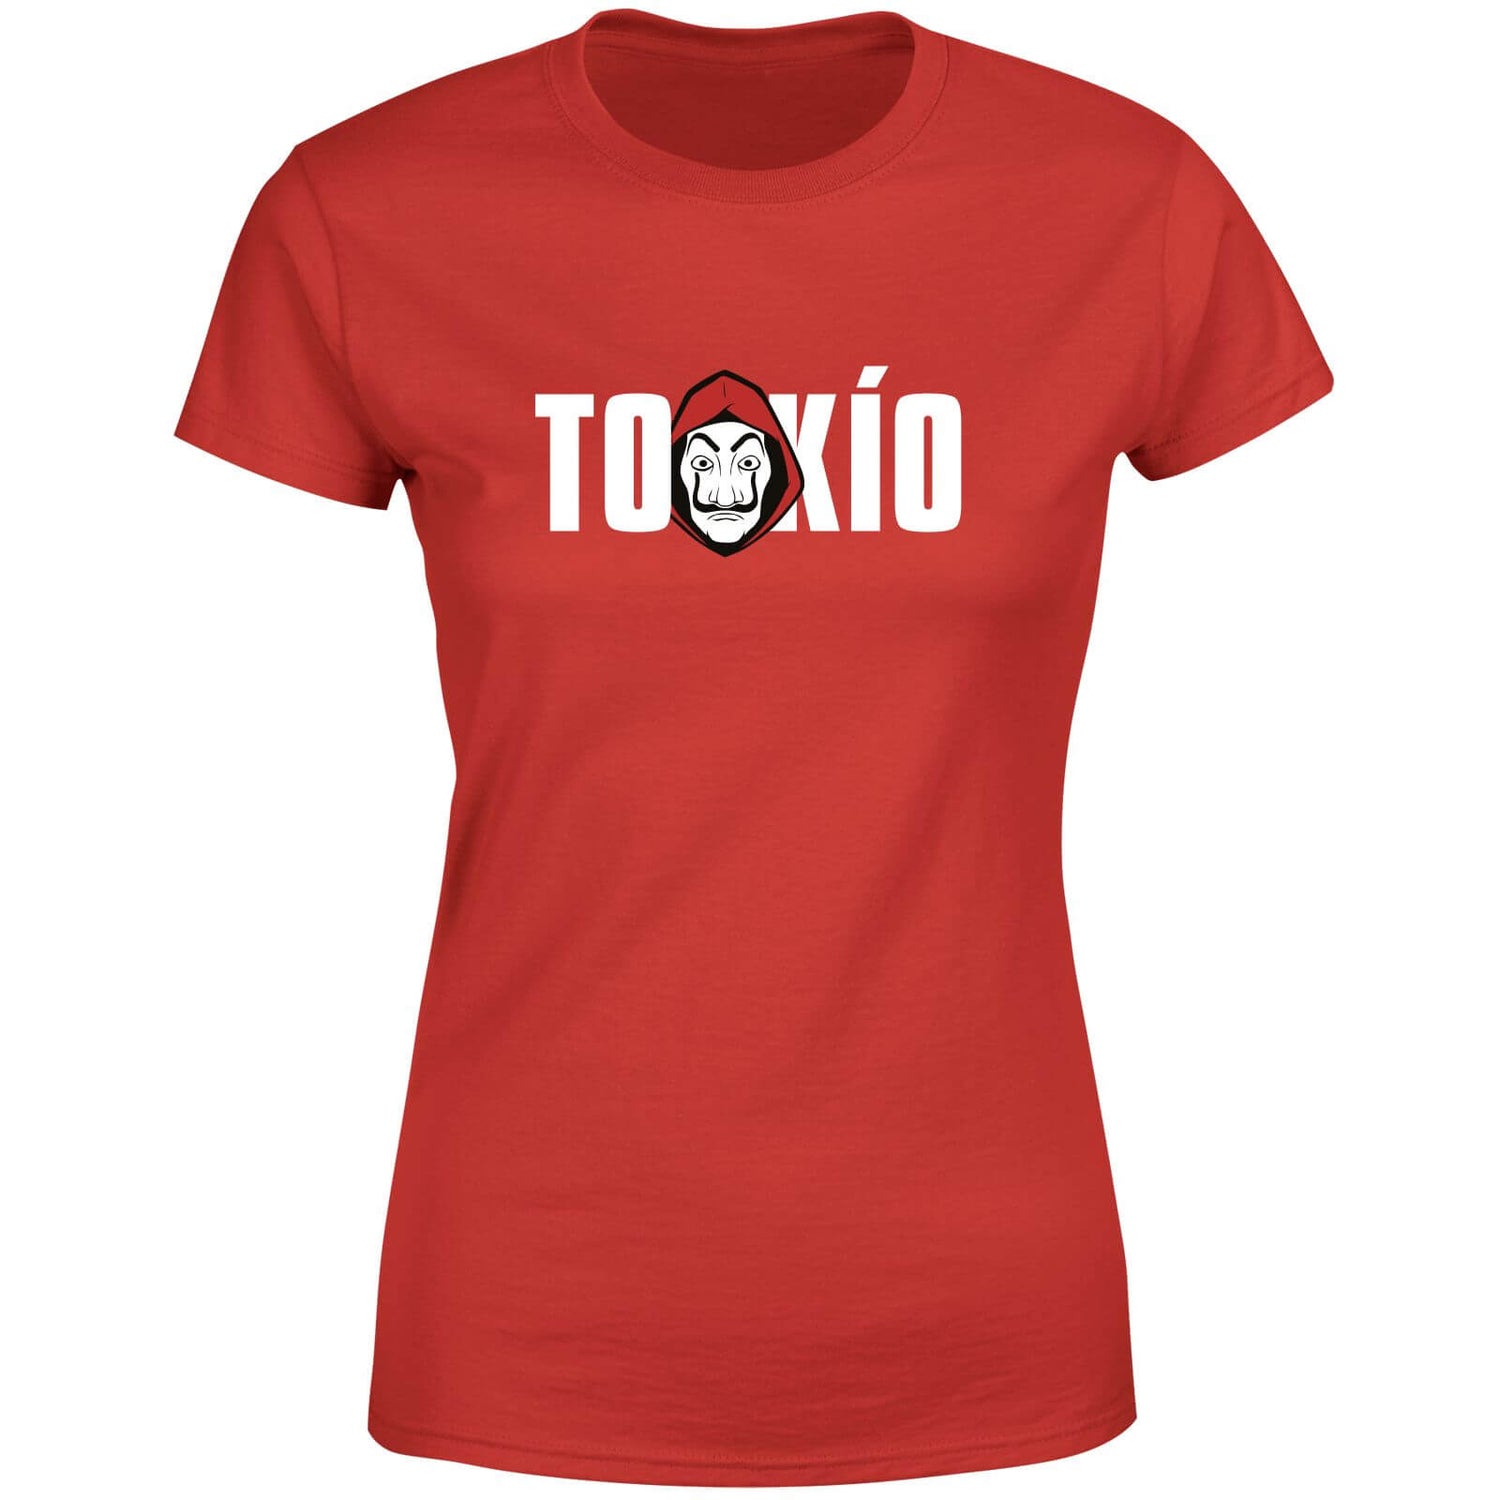 Camiseta para mujer de Money Heist Tokio - Rojo